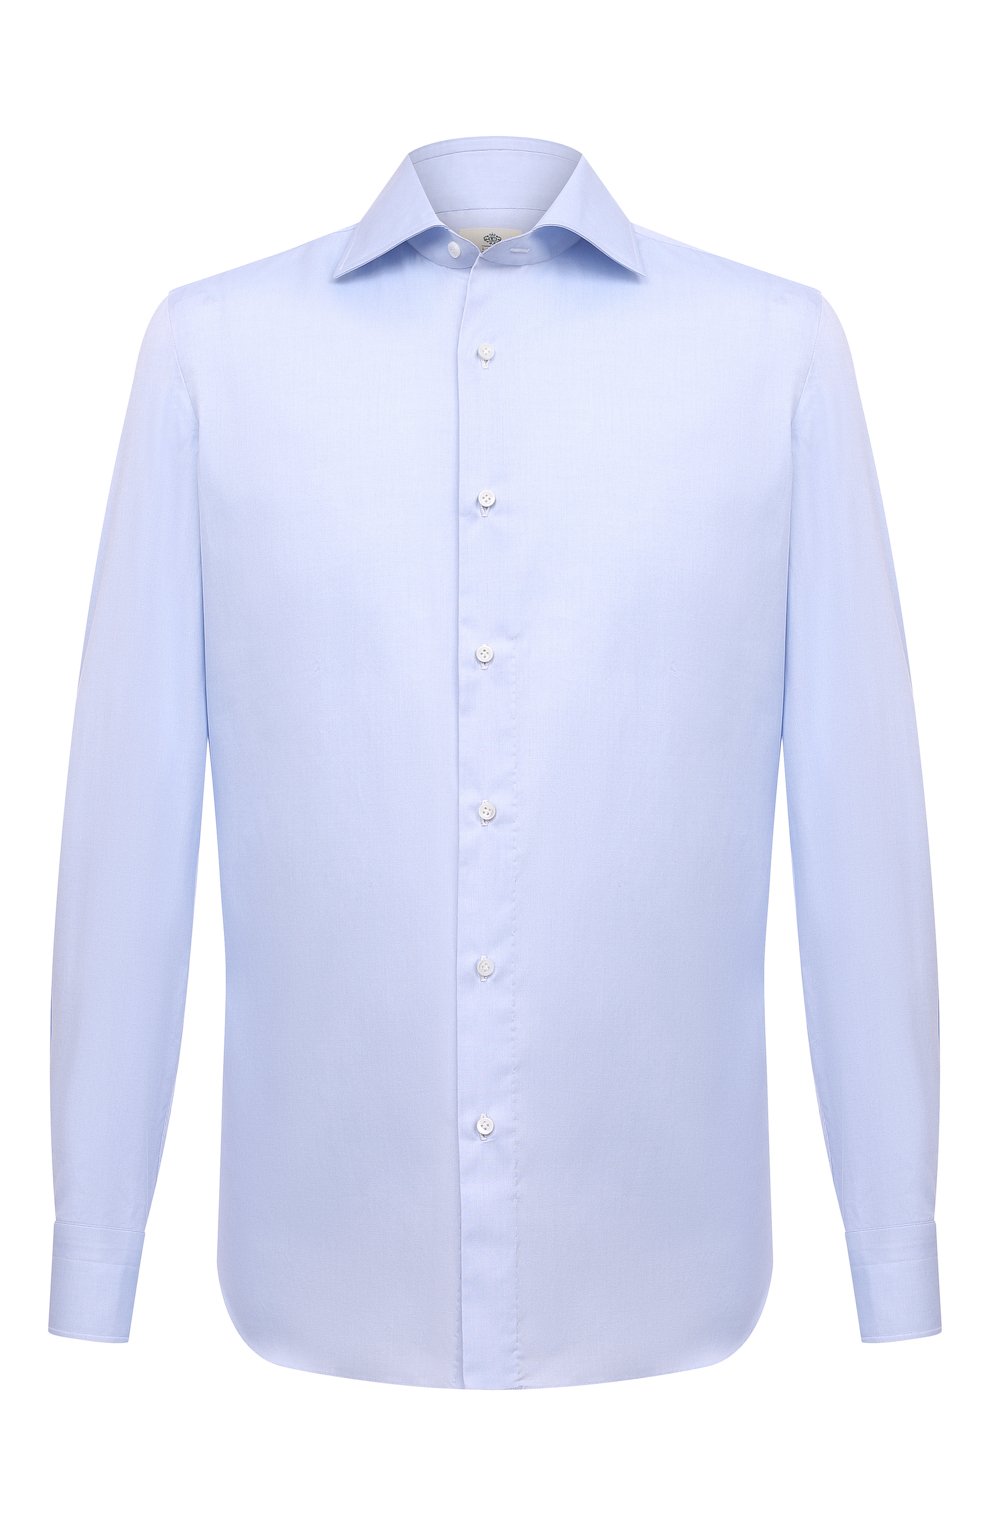 Рубашки Luigi Borrelli, Хлопковая сорочка Luigi Borrelli, Италия, Голубой, Хлопок: 100%;, 13367536  - купить